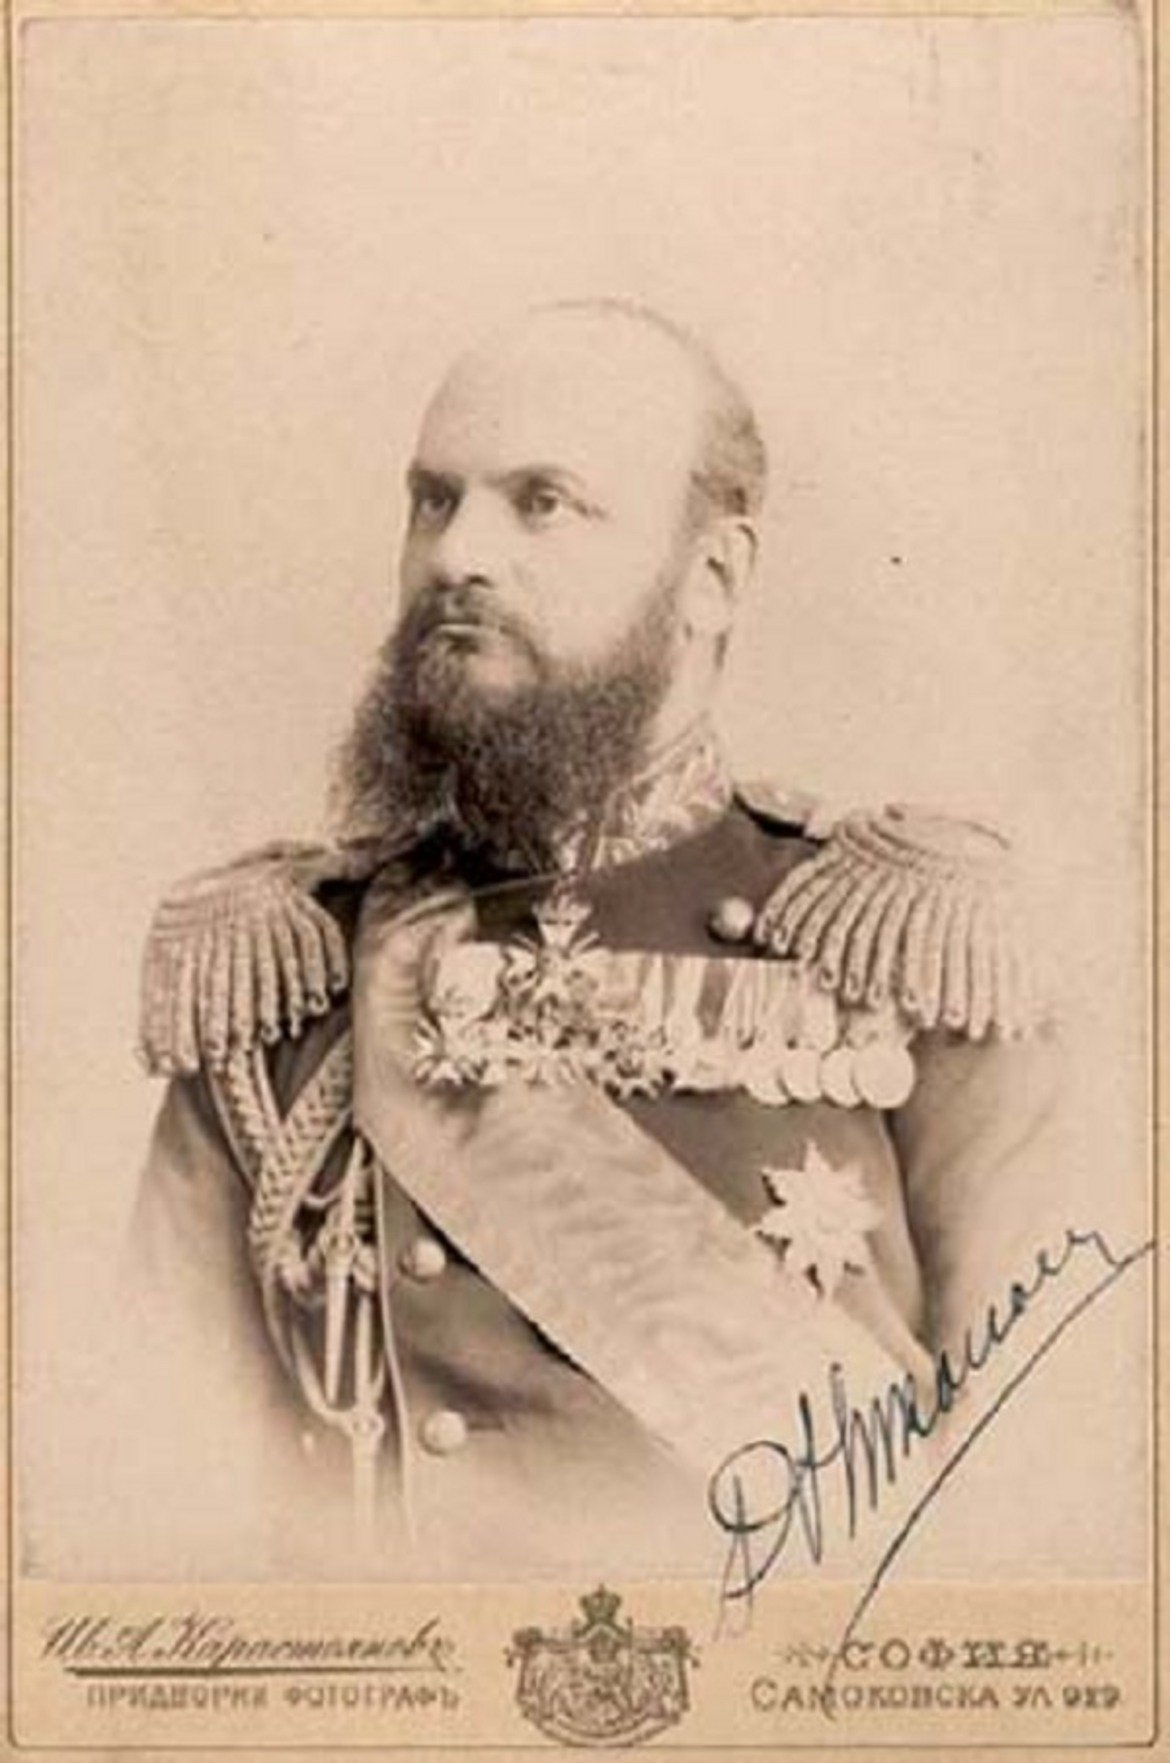 Данаил Николаев е майор от Източнорумелийската милиция. Като командващ голяма на част от милицията по време на военни маневри, на 6 септември 1885 г. отстранява главния управител на Източна Румелия, с което осигурява осъществяването на Съединението на Княжество България и Източна Румелия. На същия ден е издадена прокламация на БТЦРК за създаване на временно правителство на Източна Румелия. В него е включен и майор Николаев. Заема длъжността главнокомандващ Източнорумелийската милиция. През Сръбско-българската война командва Източния корпус, а при контранастъплението на българската армия, след боевете при Сливница (5–7 ноември 1885 г.) – Западния корпус. Командва настъпление към Цариброд и Пирот. След края на войната е награден с Орден "За храброст" II степен и повишен в звание полковник, като по този начин става първият полковник от българската армия.